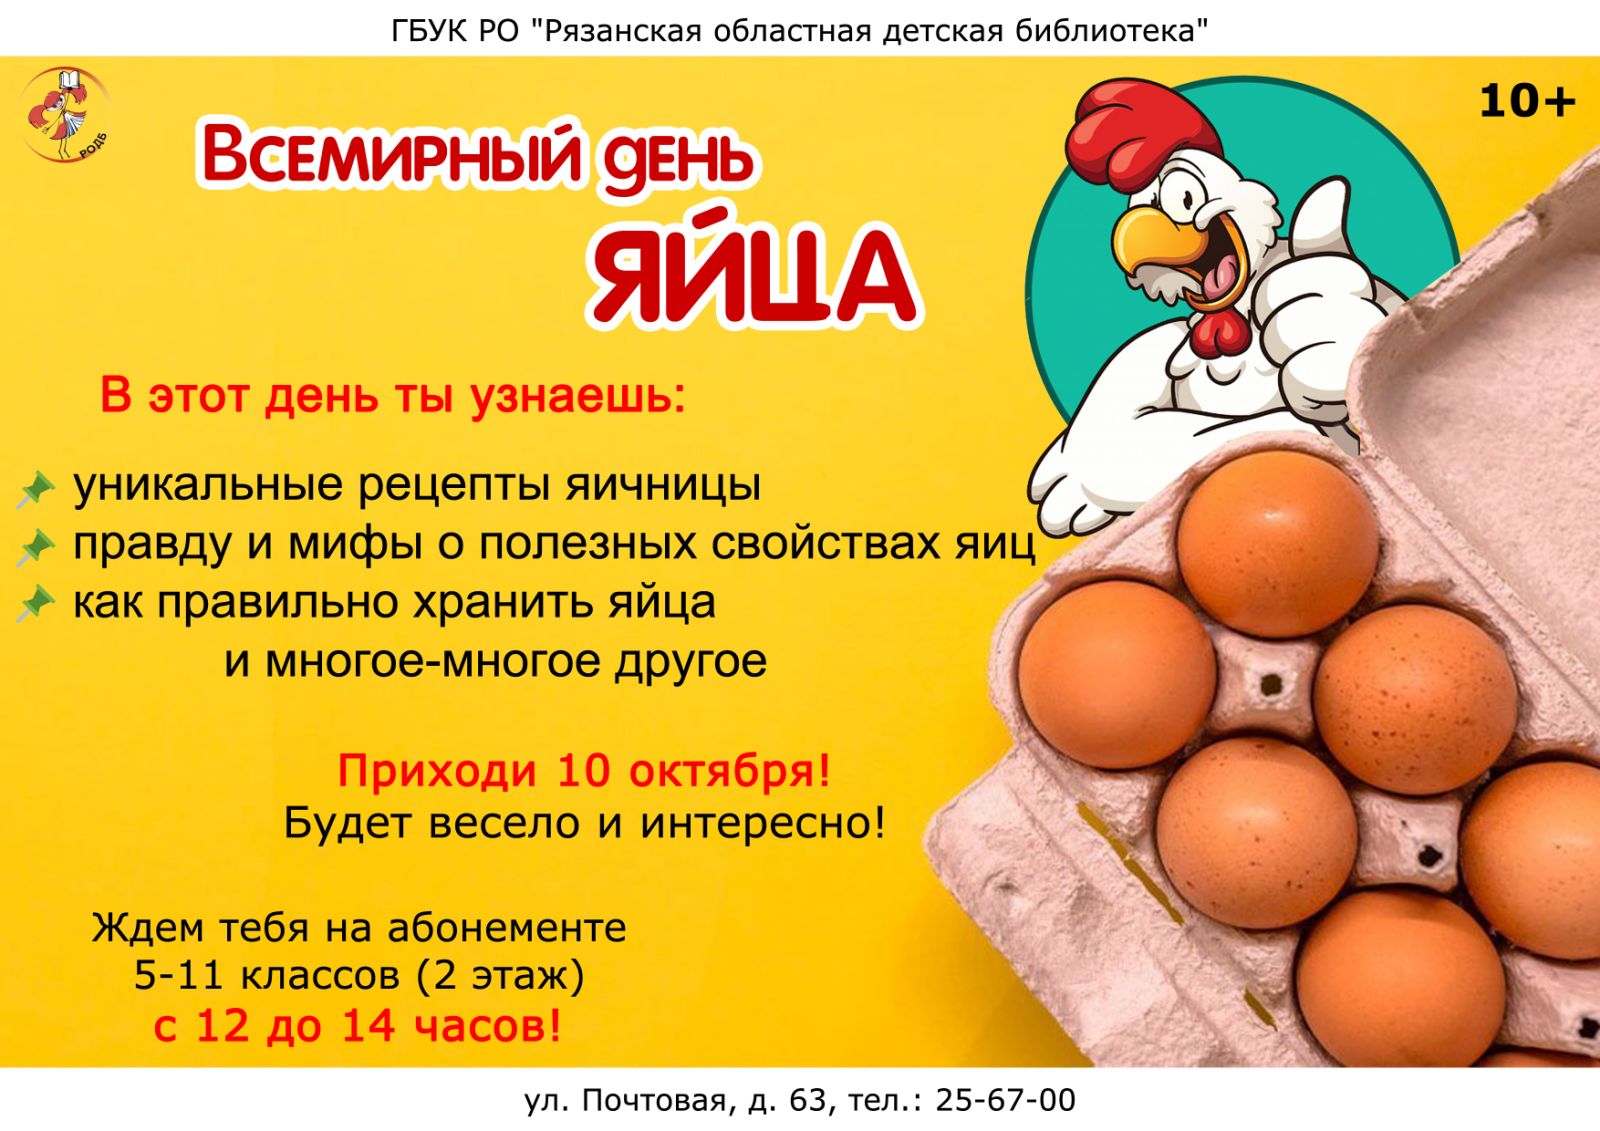 10 Октября Всемирный день яйца